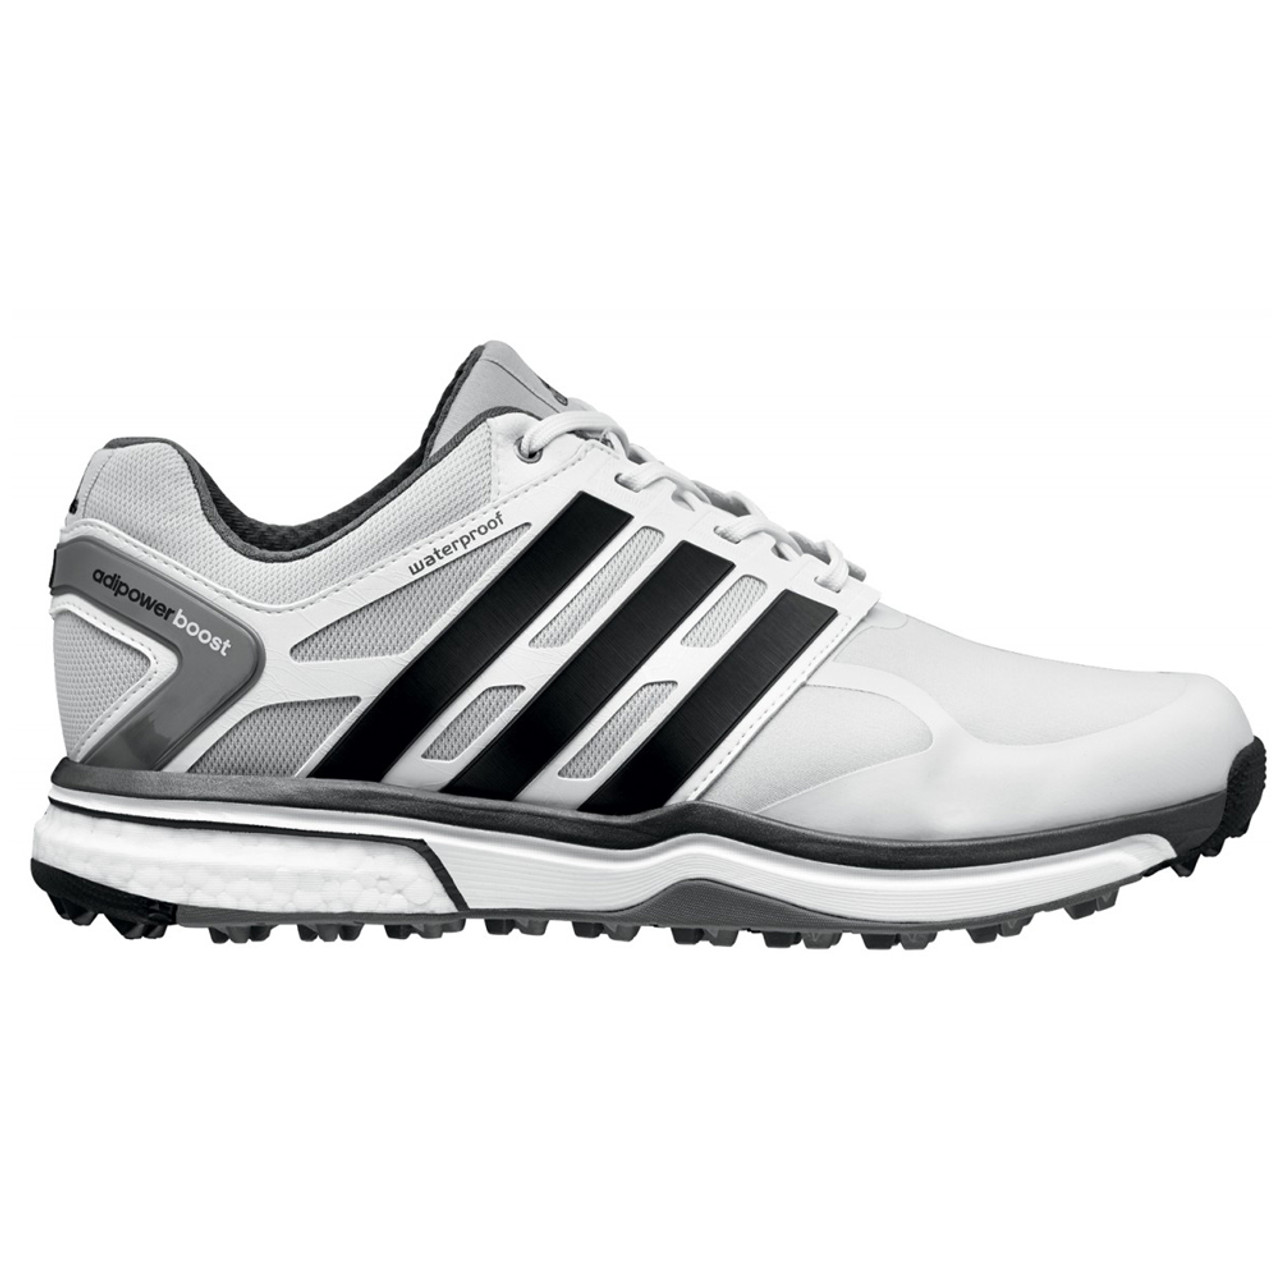 Valiente variable consumirse Adidas Men's Adipower S Boost Golf Shoe - Grey | Discount Adidas Men's  Athletic Shoes & More - Shoolu.com | Shoolu.com